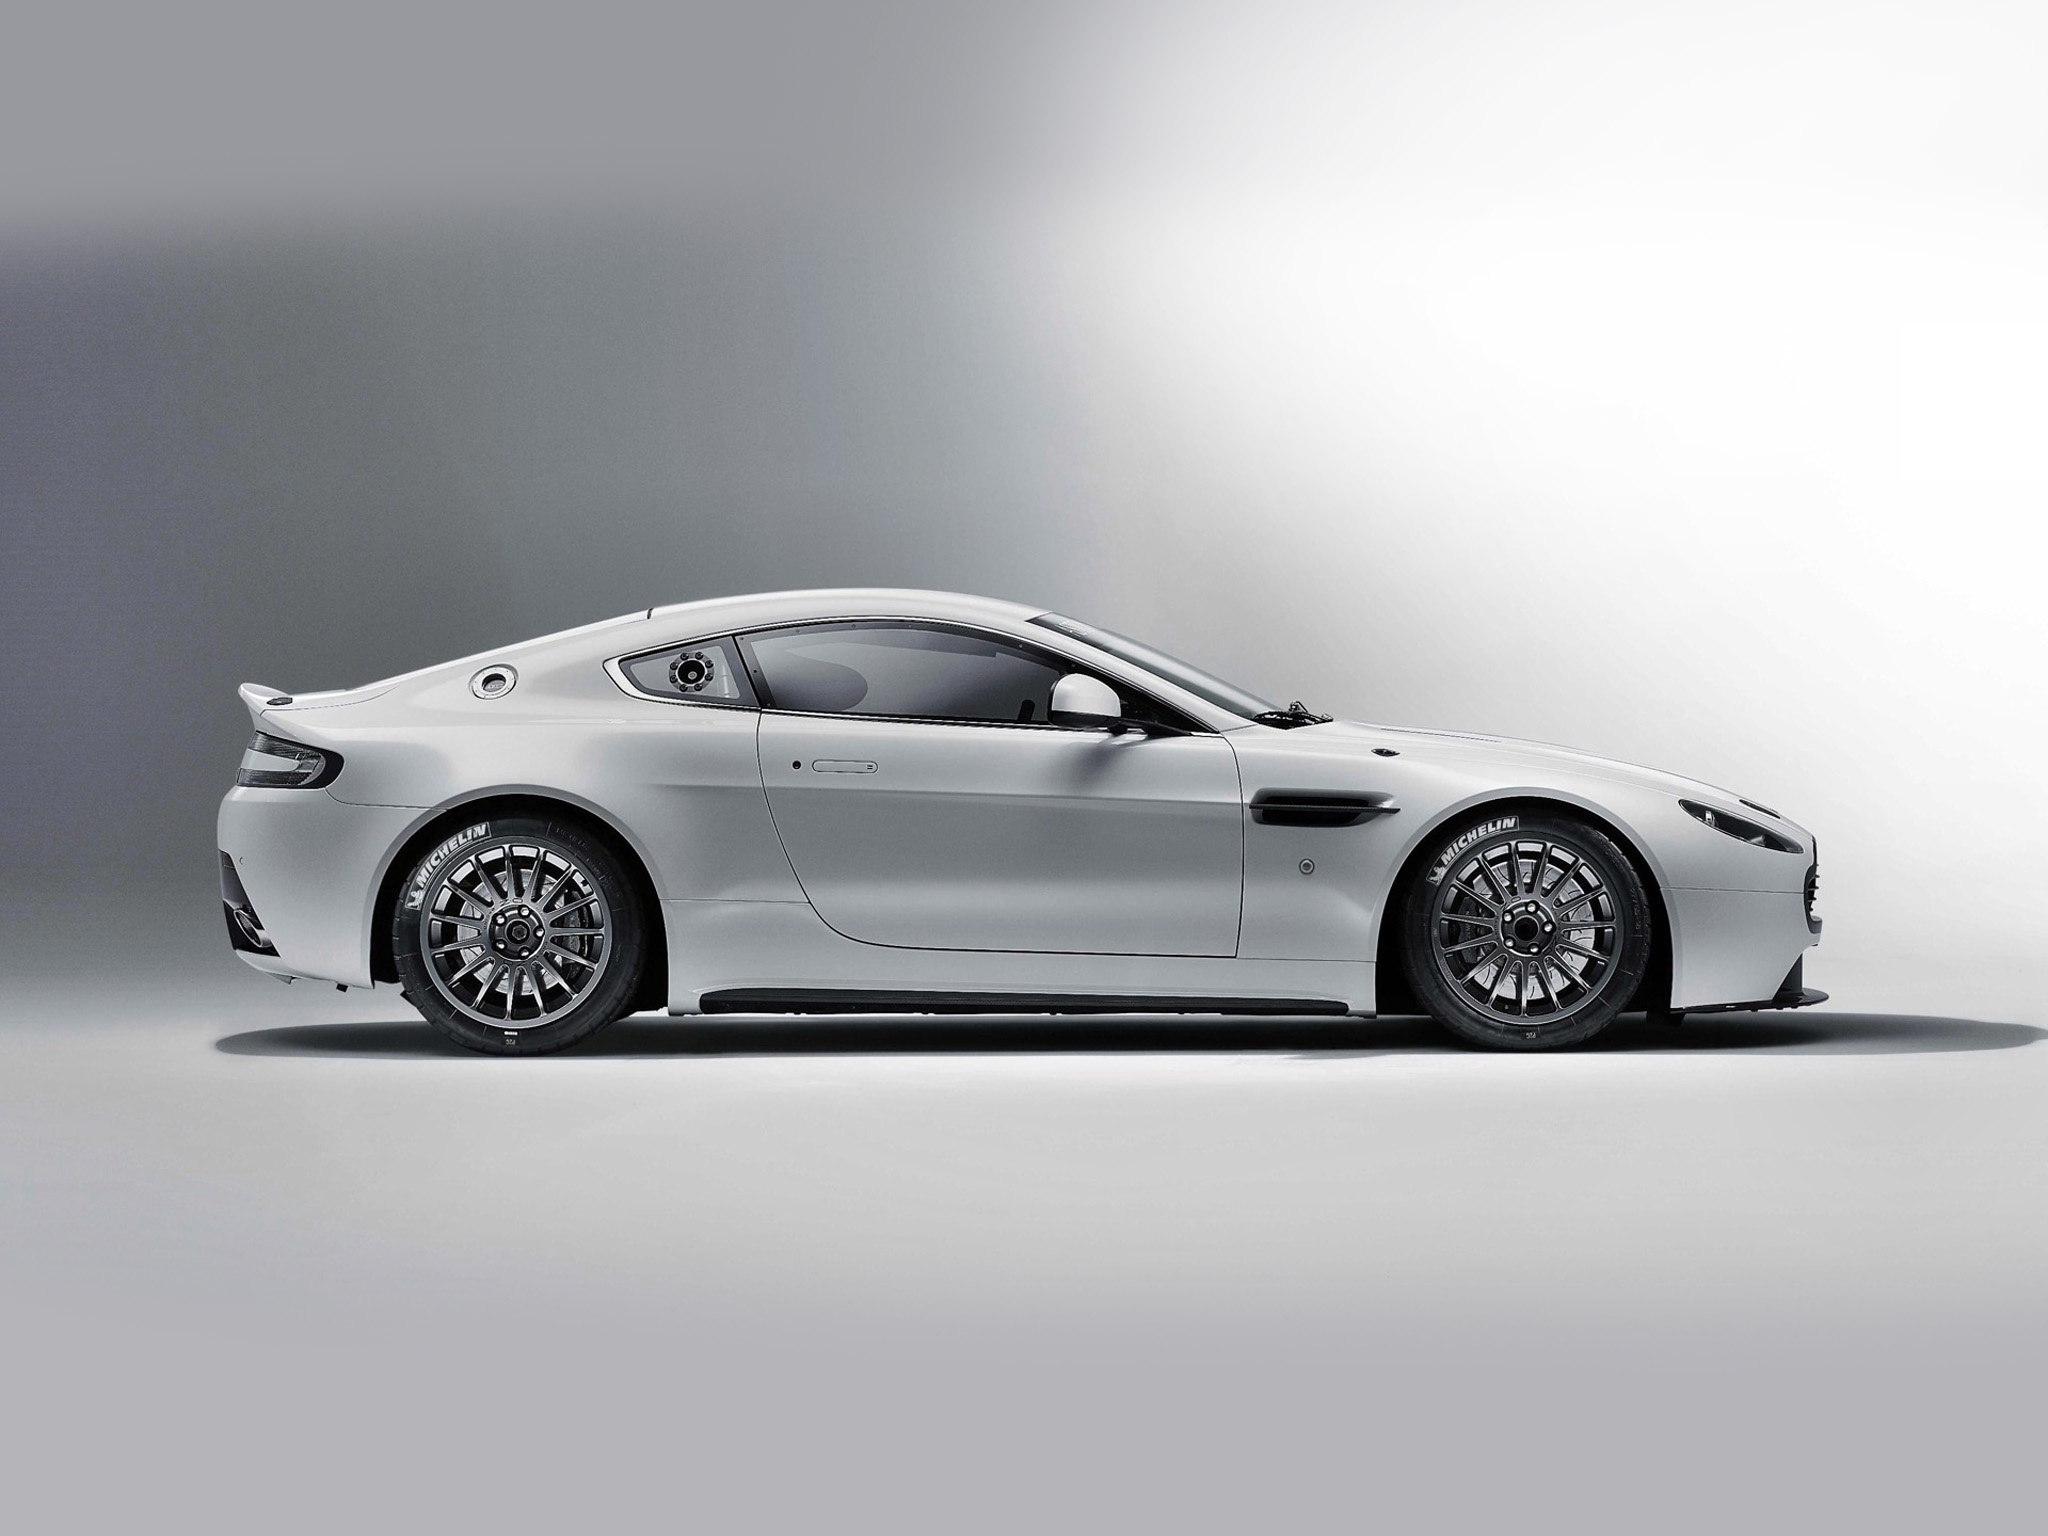 Descargar fondos de escritorio de Aston Martin Vantage Gt4 HD